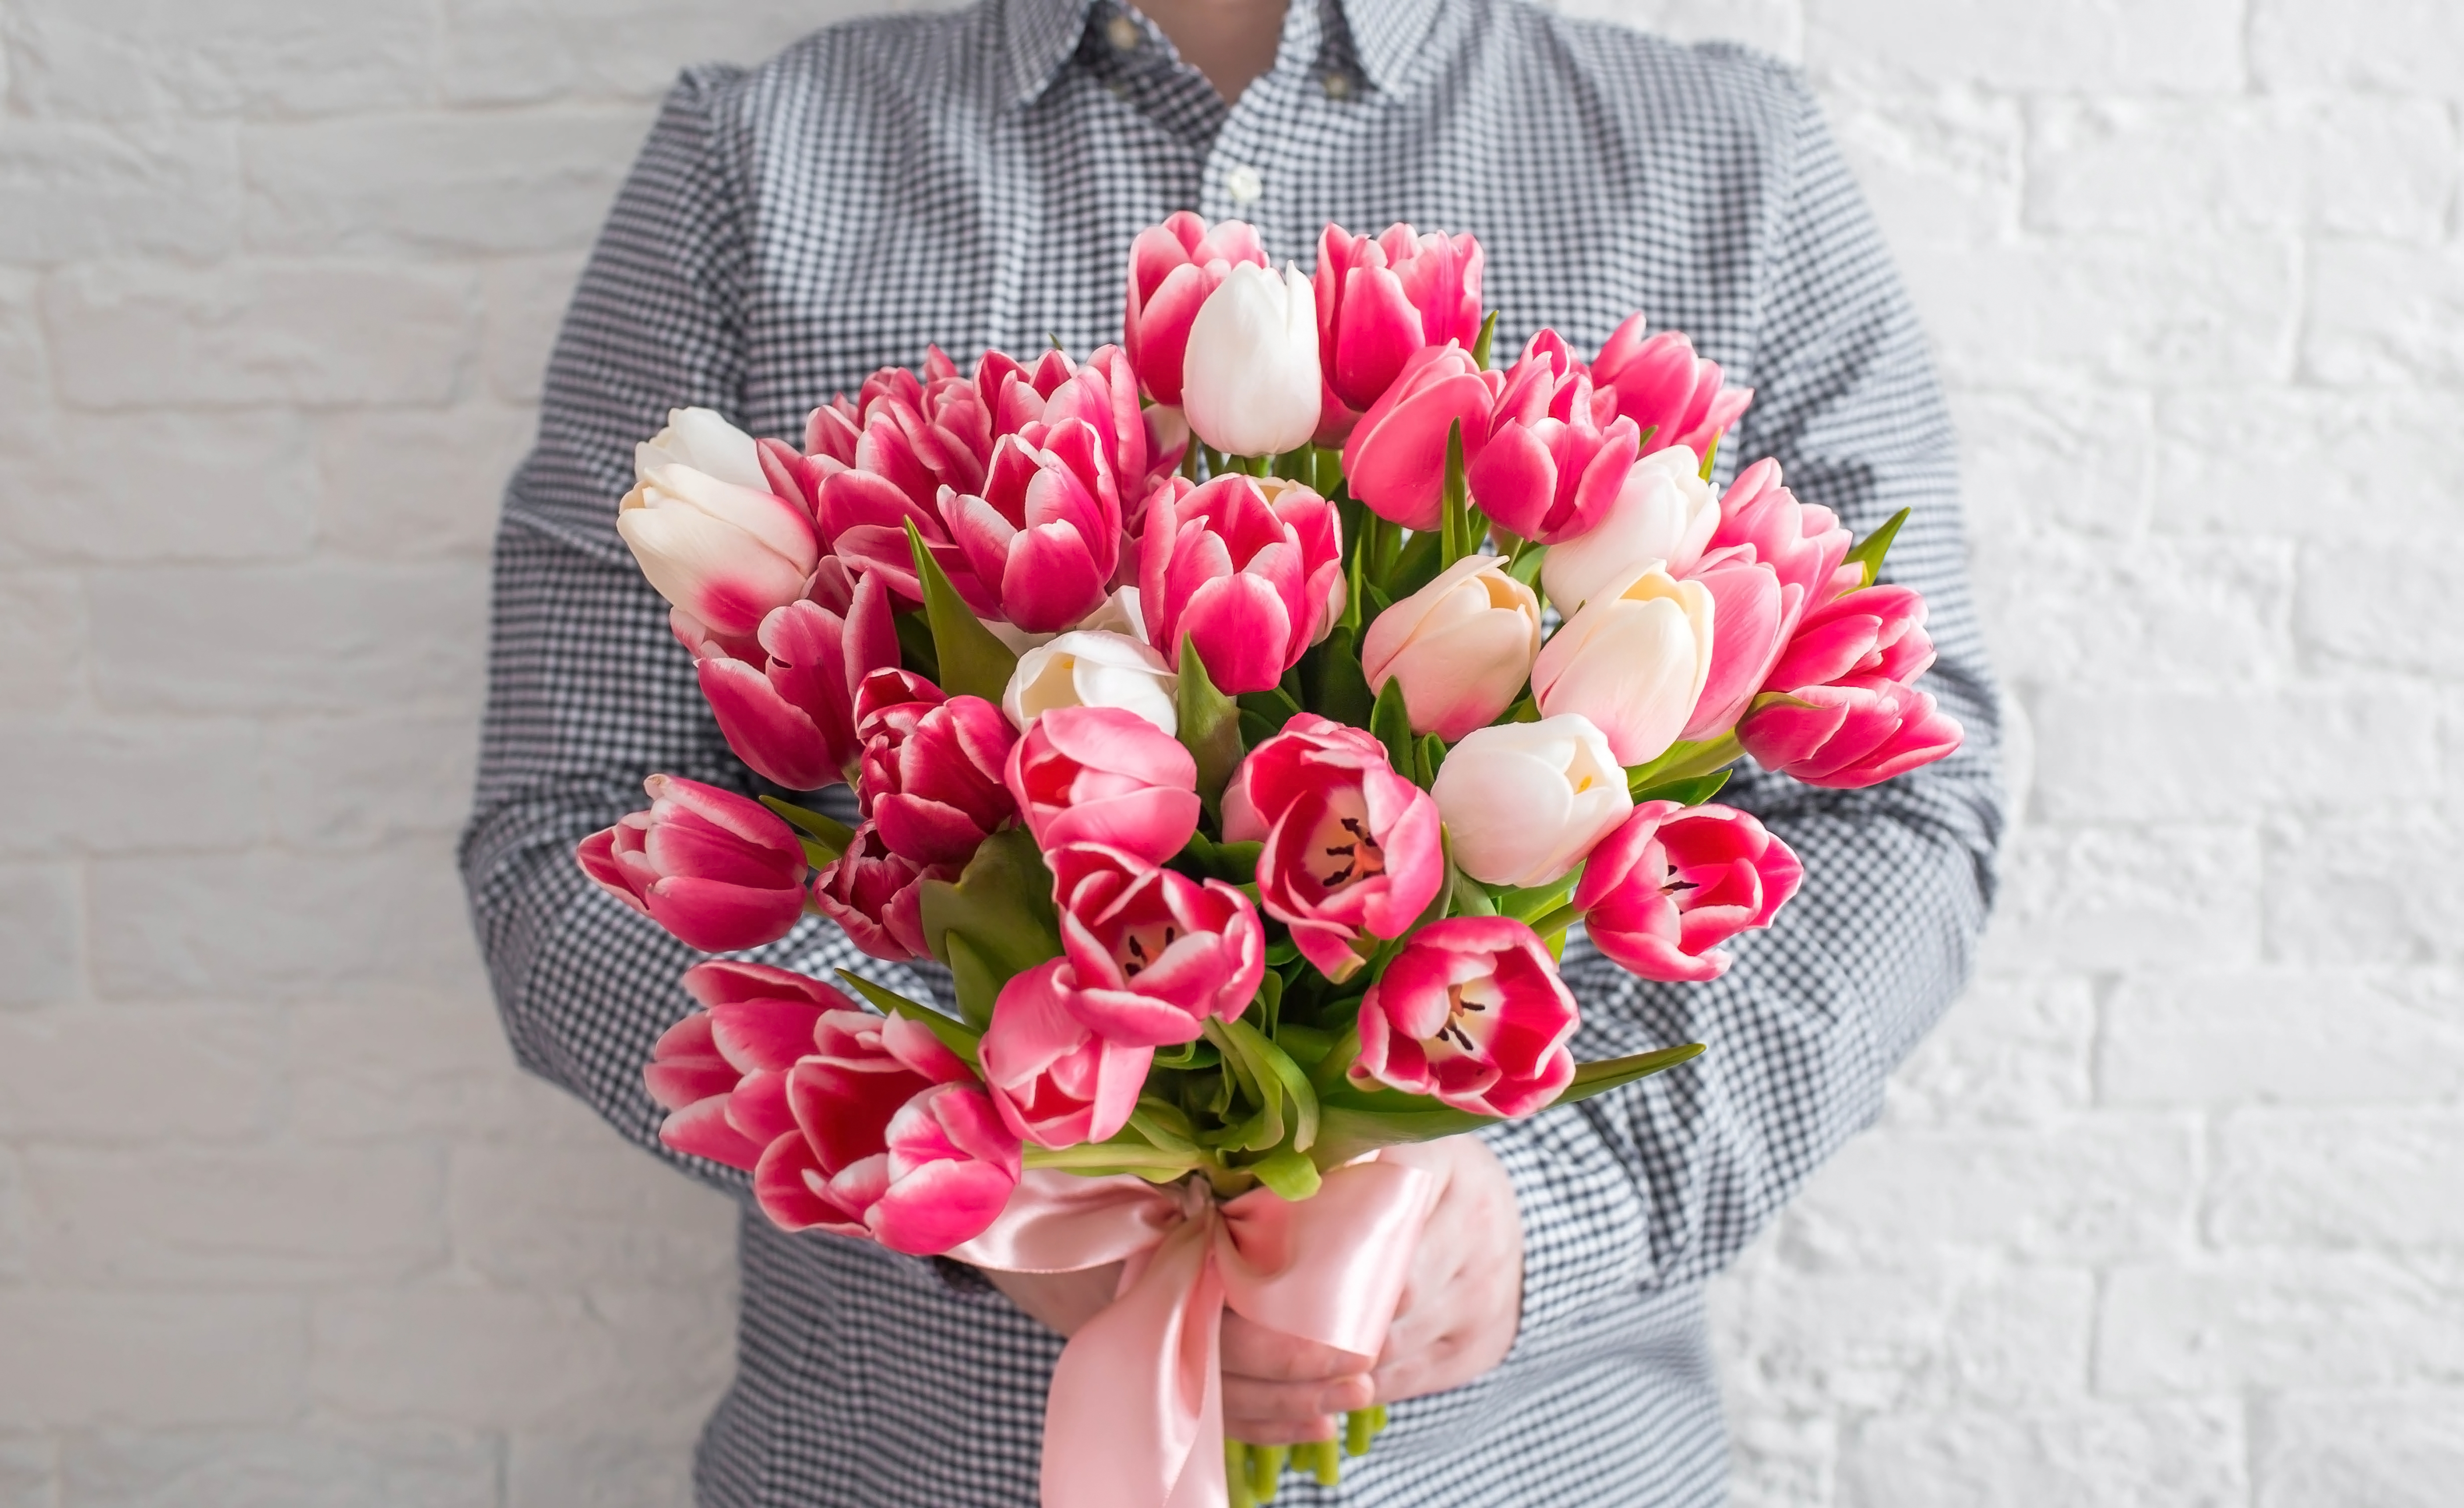 Un joven sosteniendo flores | Fuente: Shutterstock